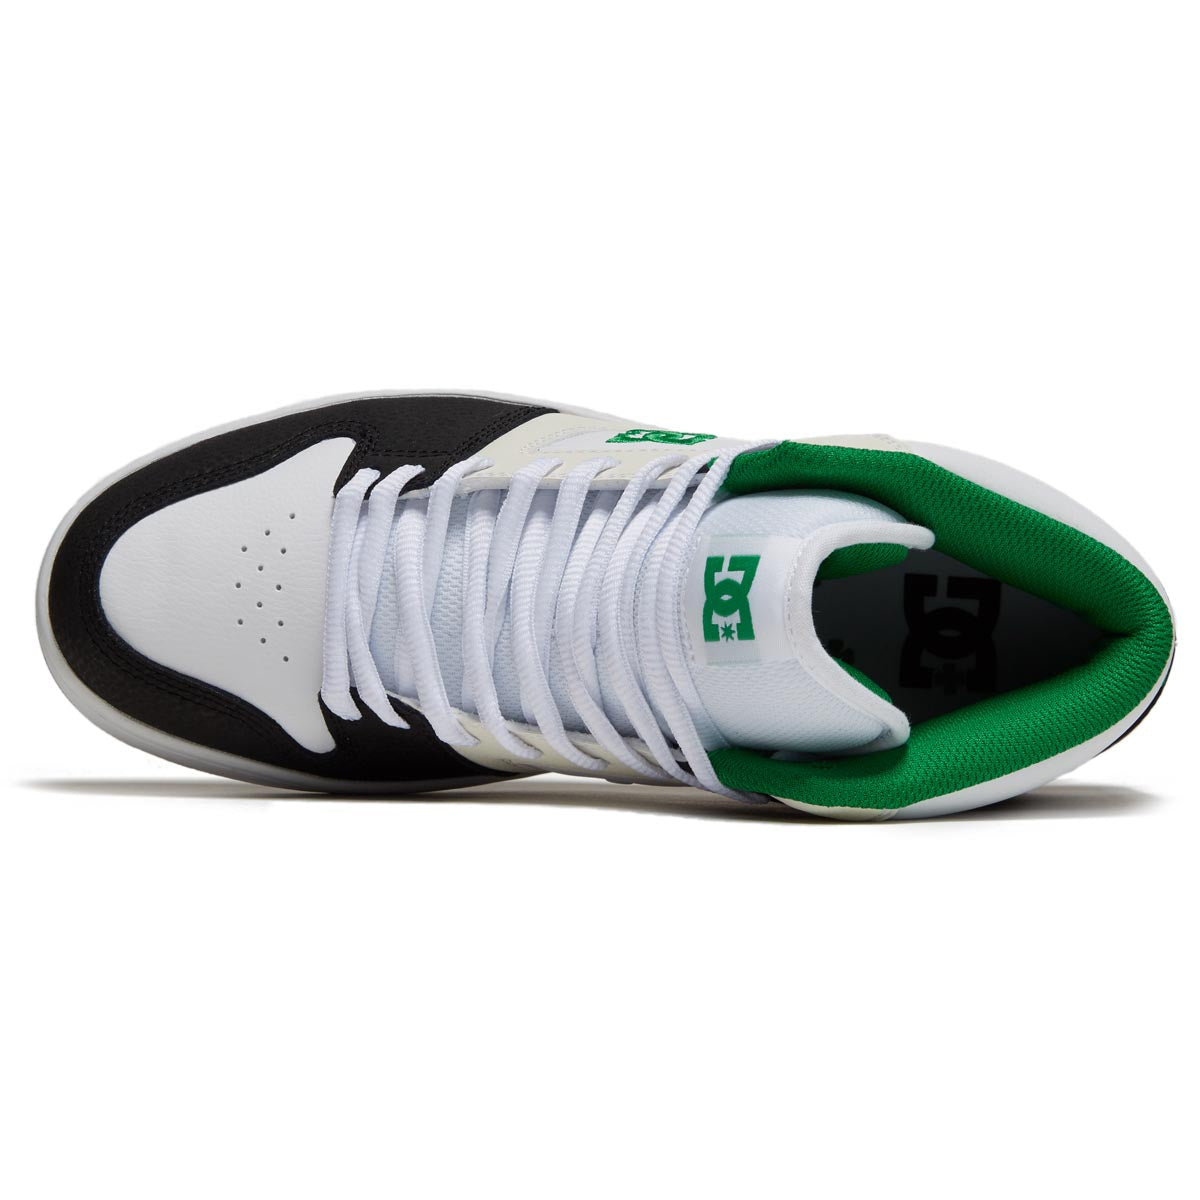 DC Manteca 4 Hi Shoes - Black/White/Green image 3